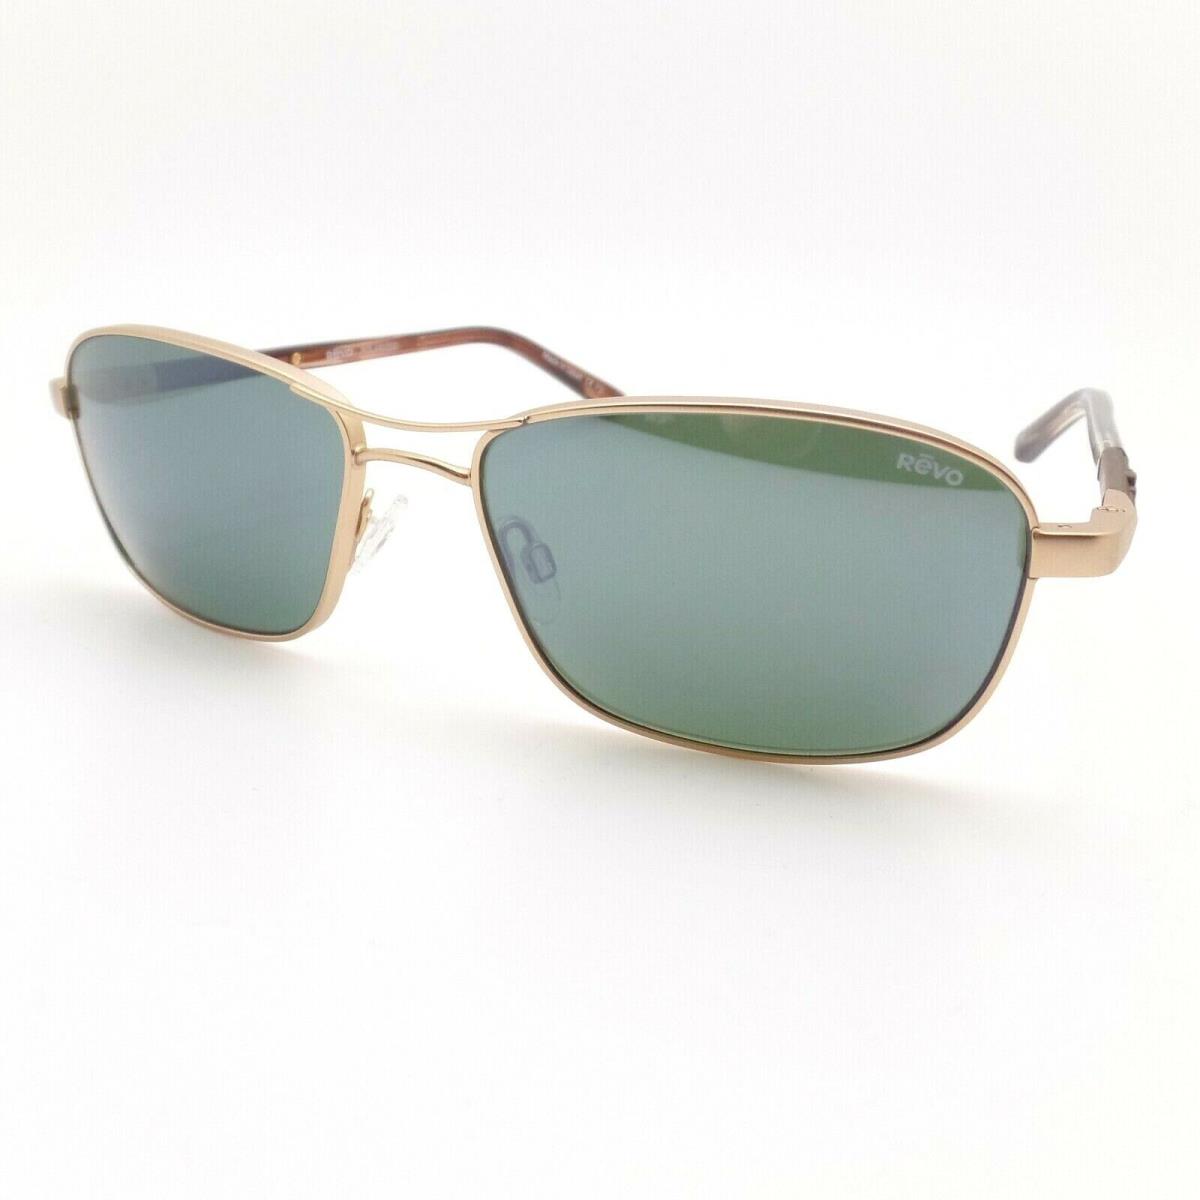 Revo sunglasses Clive - Satin Gold